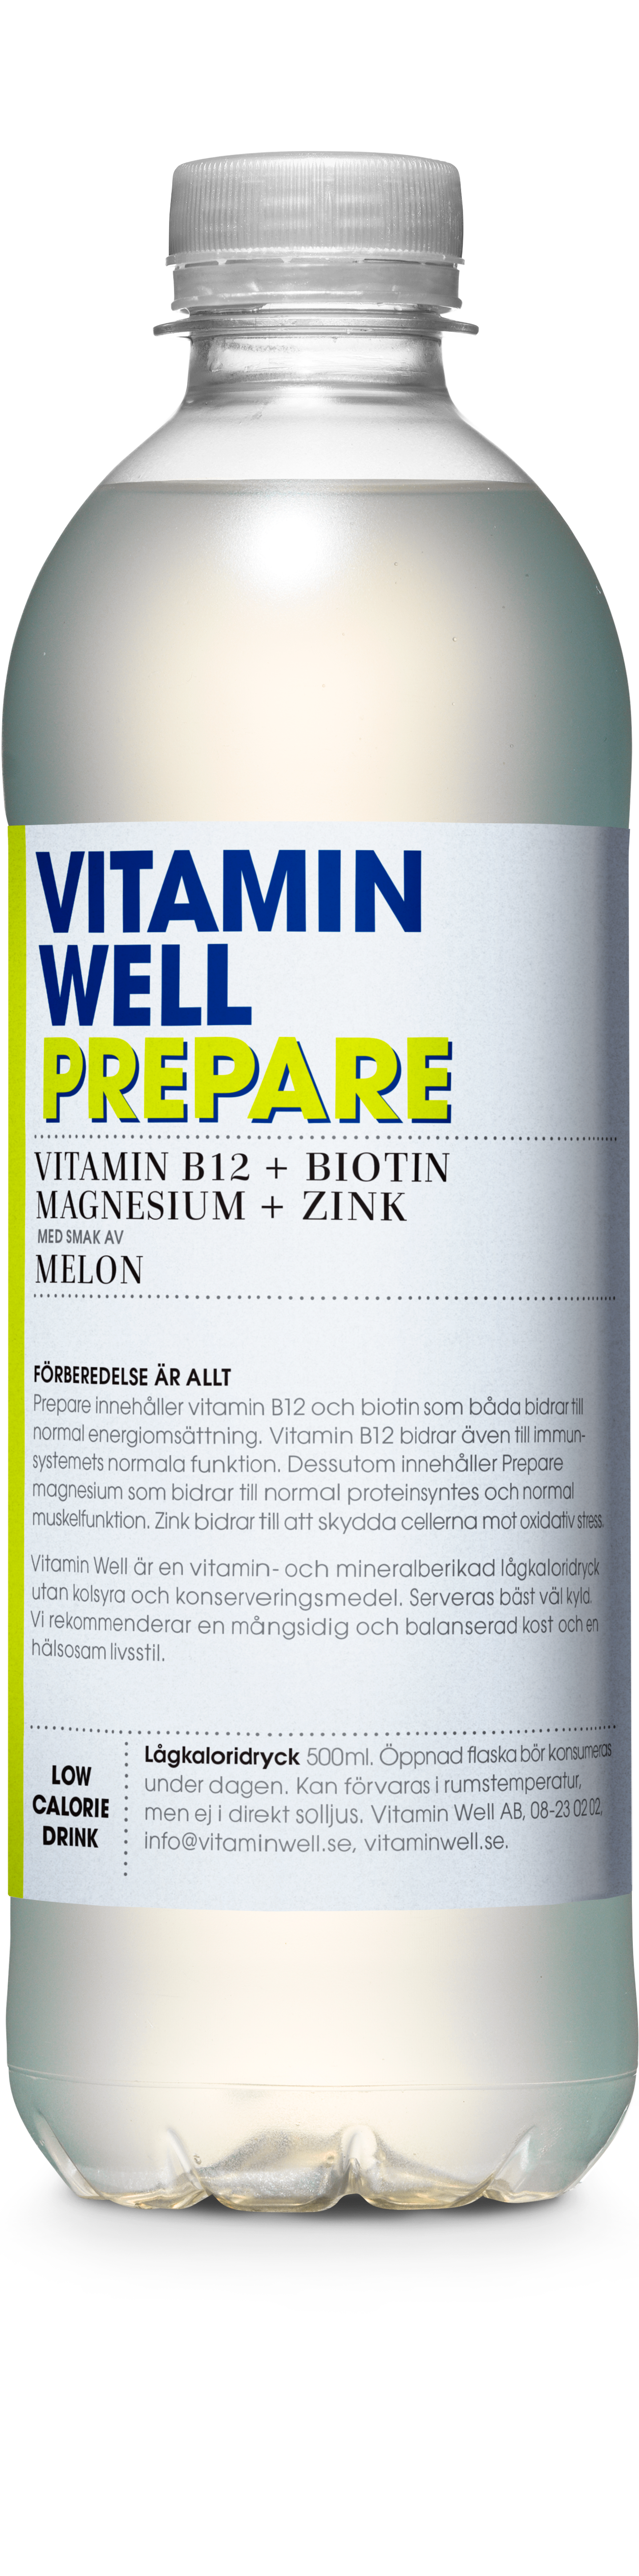 Vitamin Well Prepare 500 ml